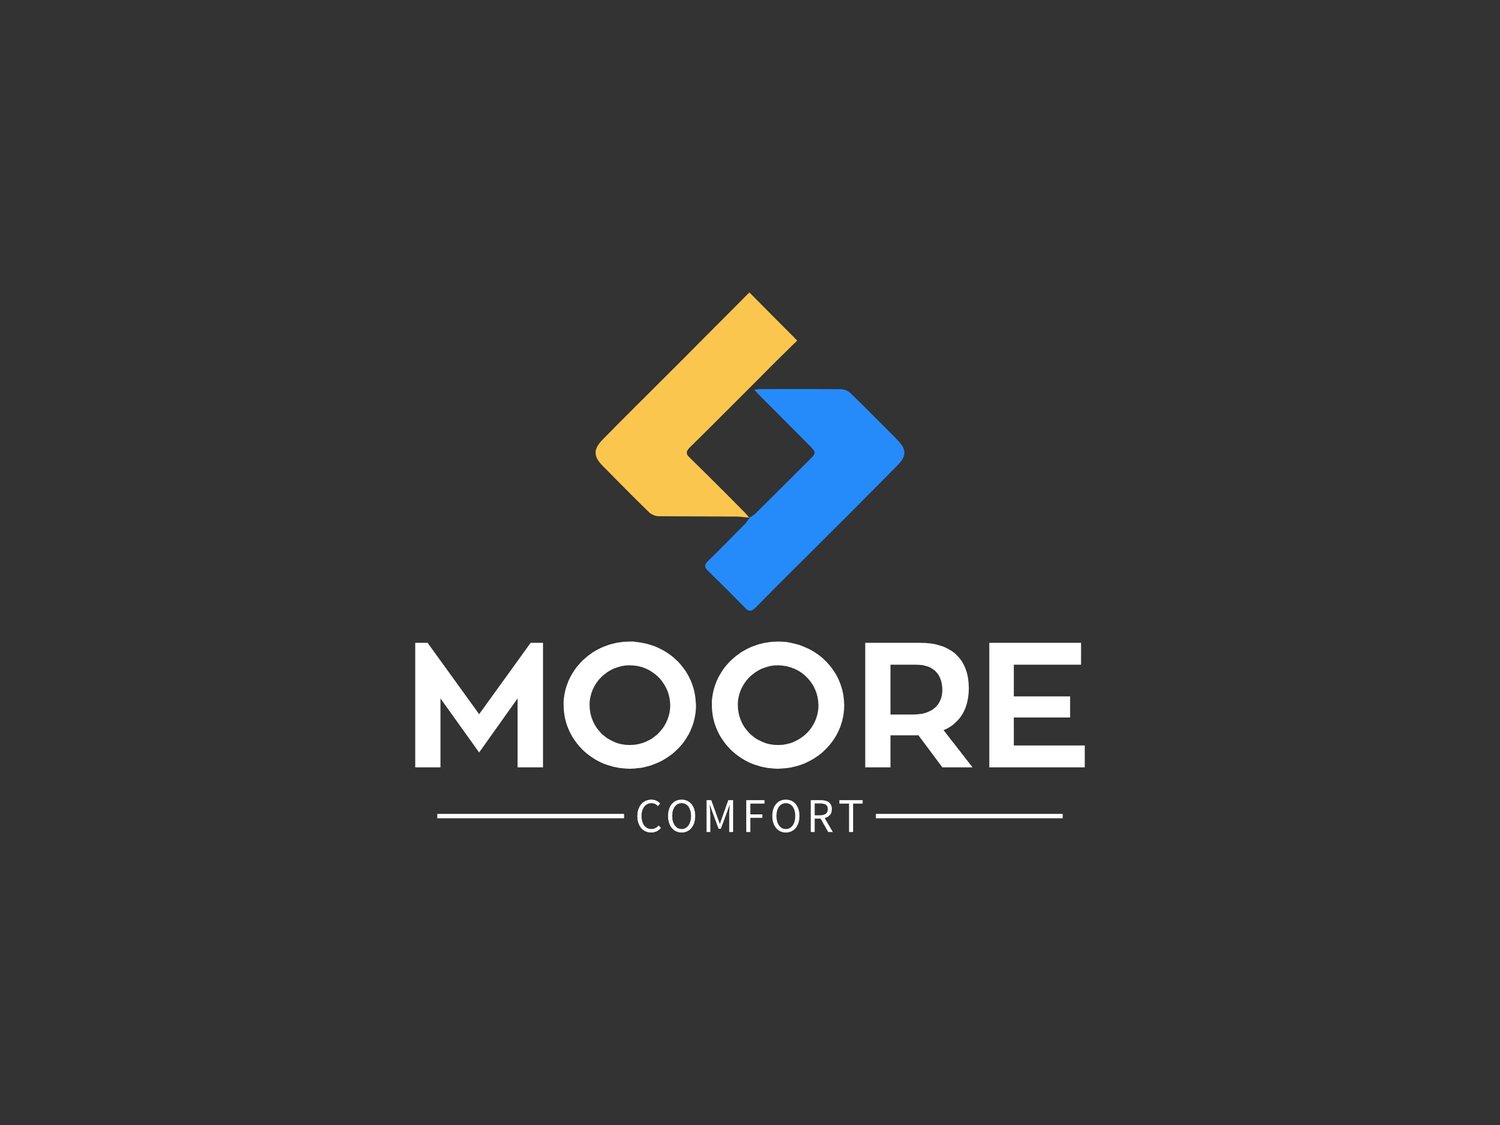 Moore Comfort